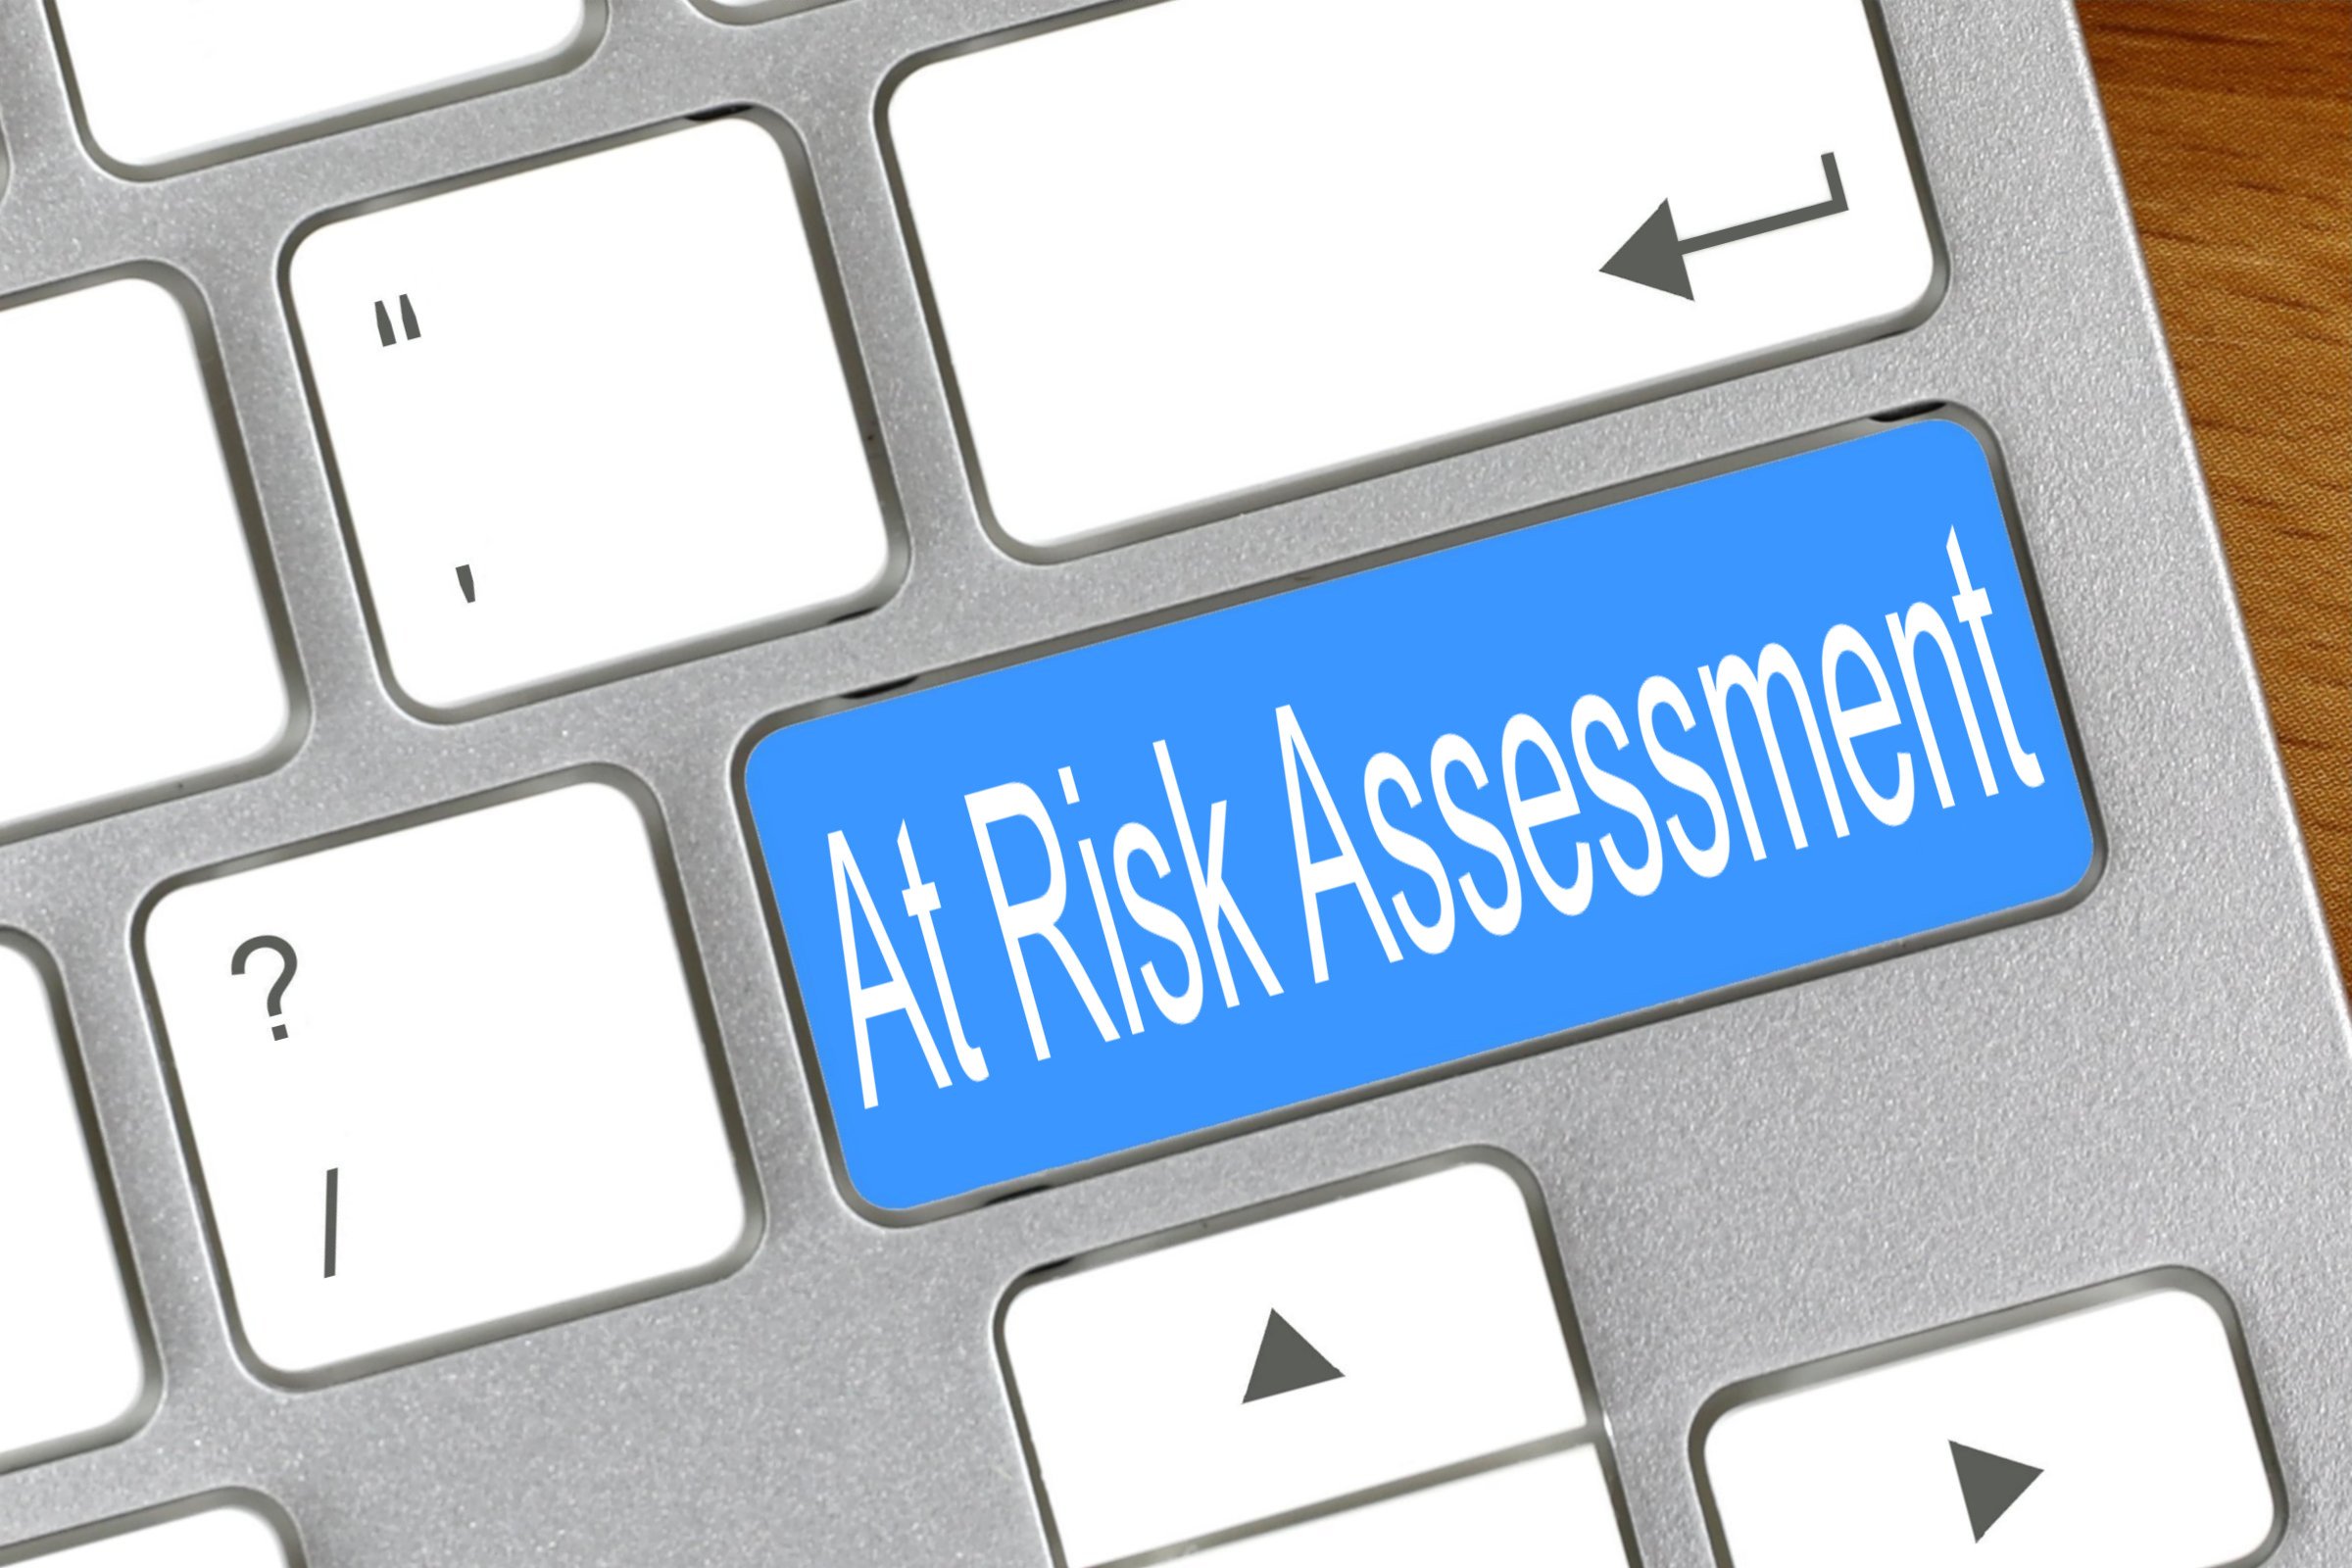 At Risk Assessment